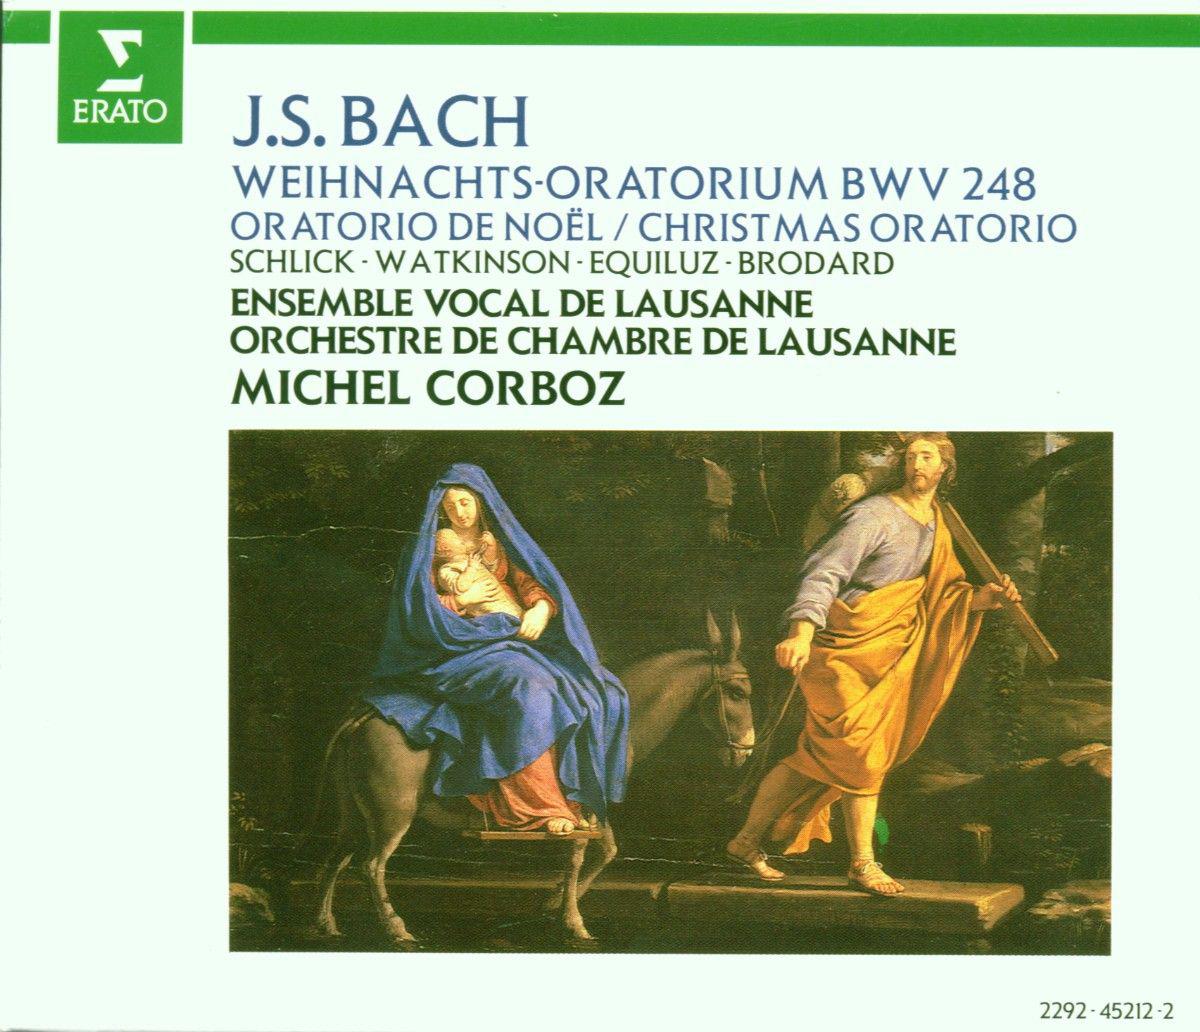 Weihnachtsoratorium, BWV 248, Pt. 3: No. 33, Choral. " Ich will dich mit Flei bewahren"  No. 34, Rezitativ. " Und die Hirten kehrten wieder um"